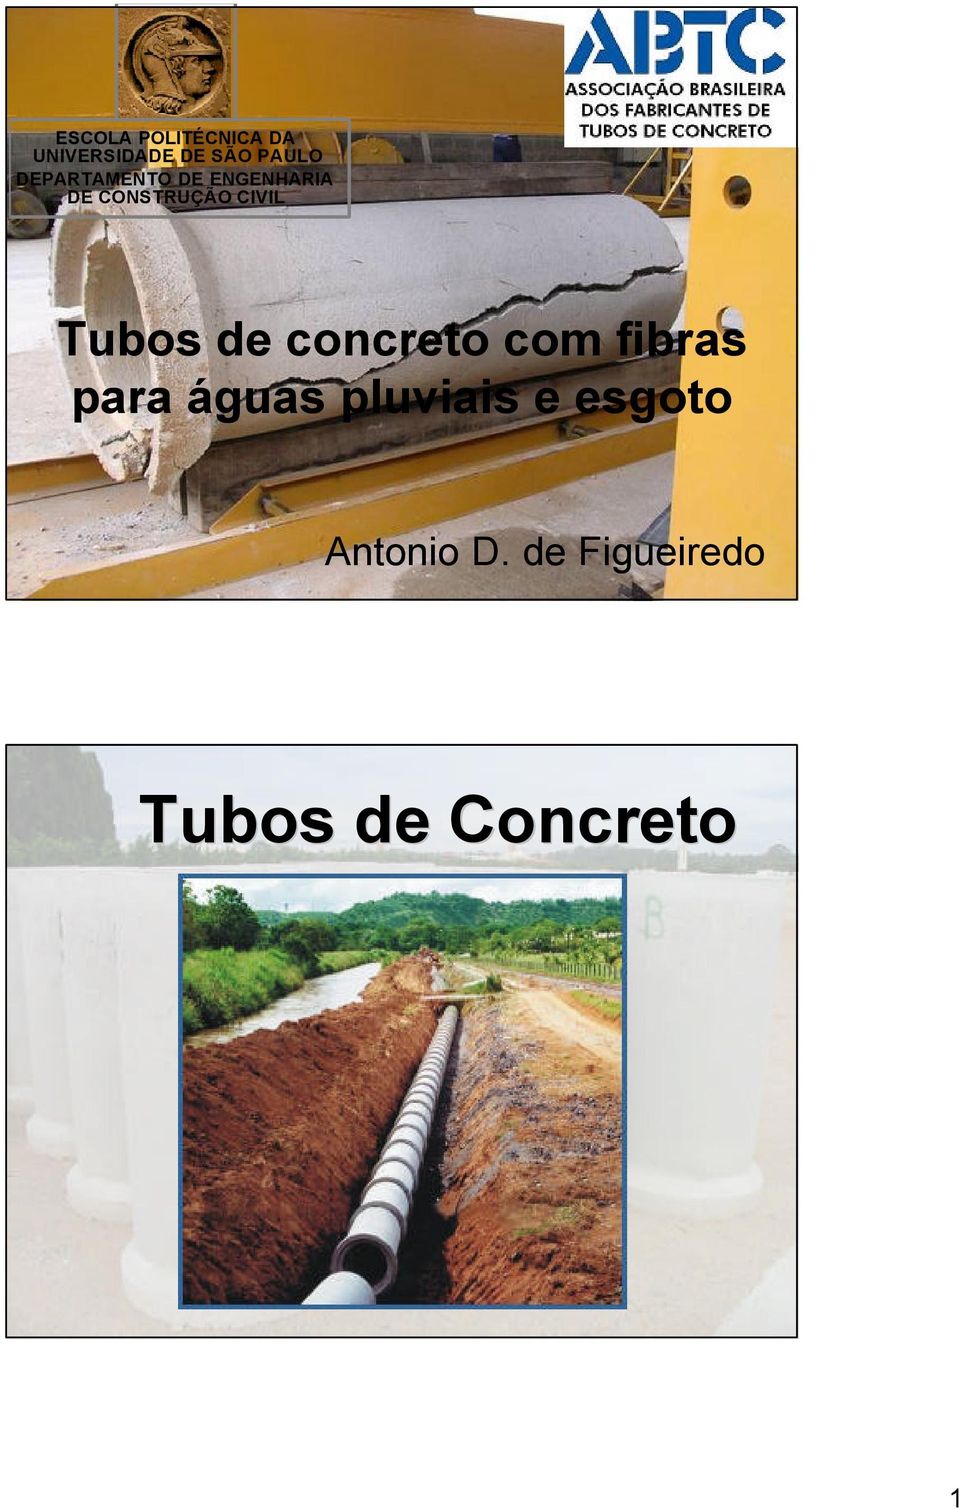 Tubos de concreto com fibras para águas pluviais